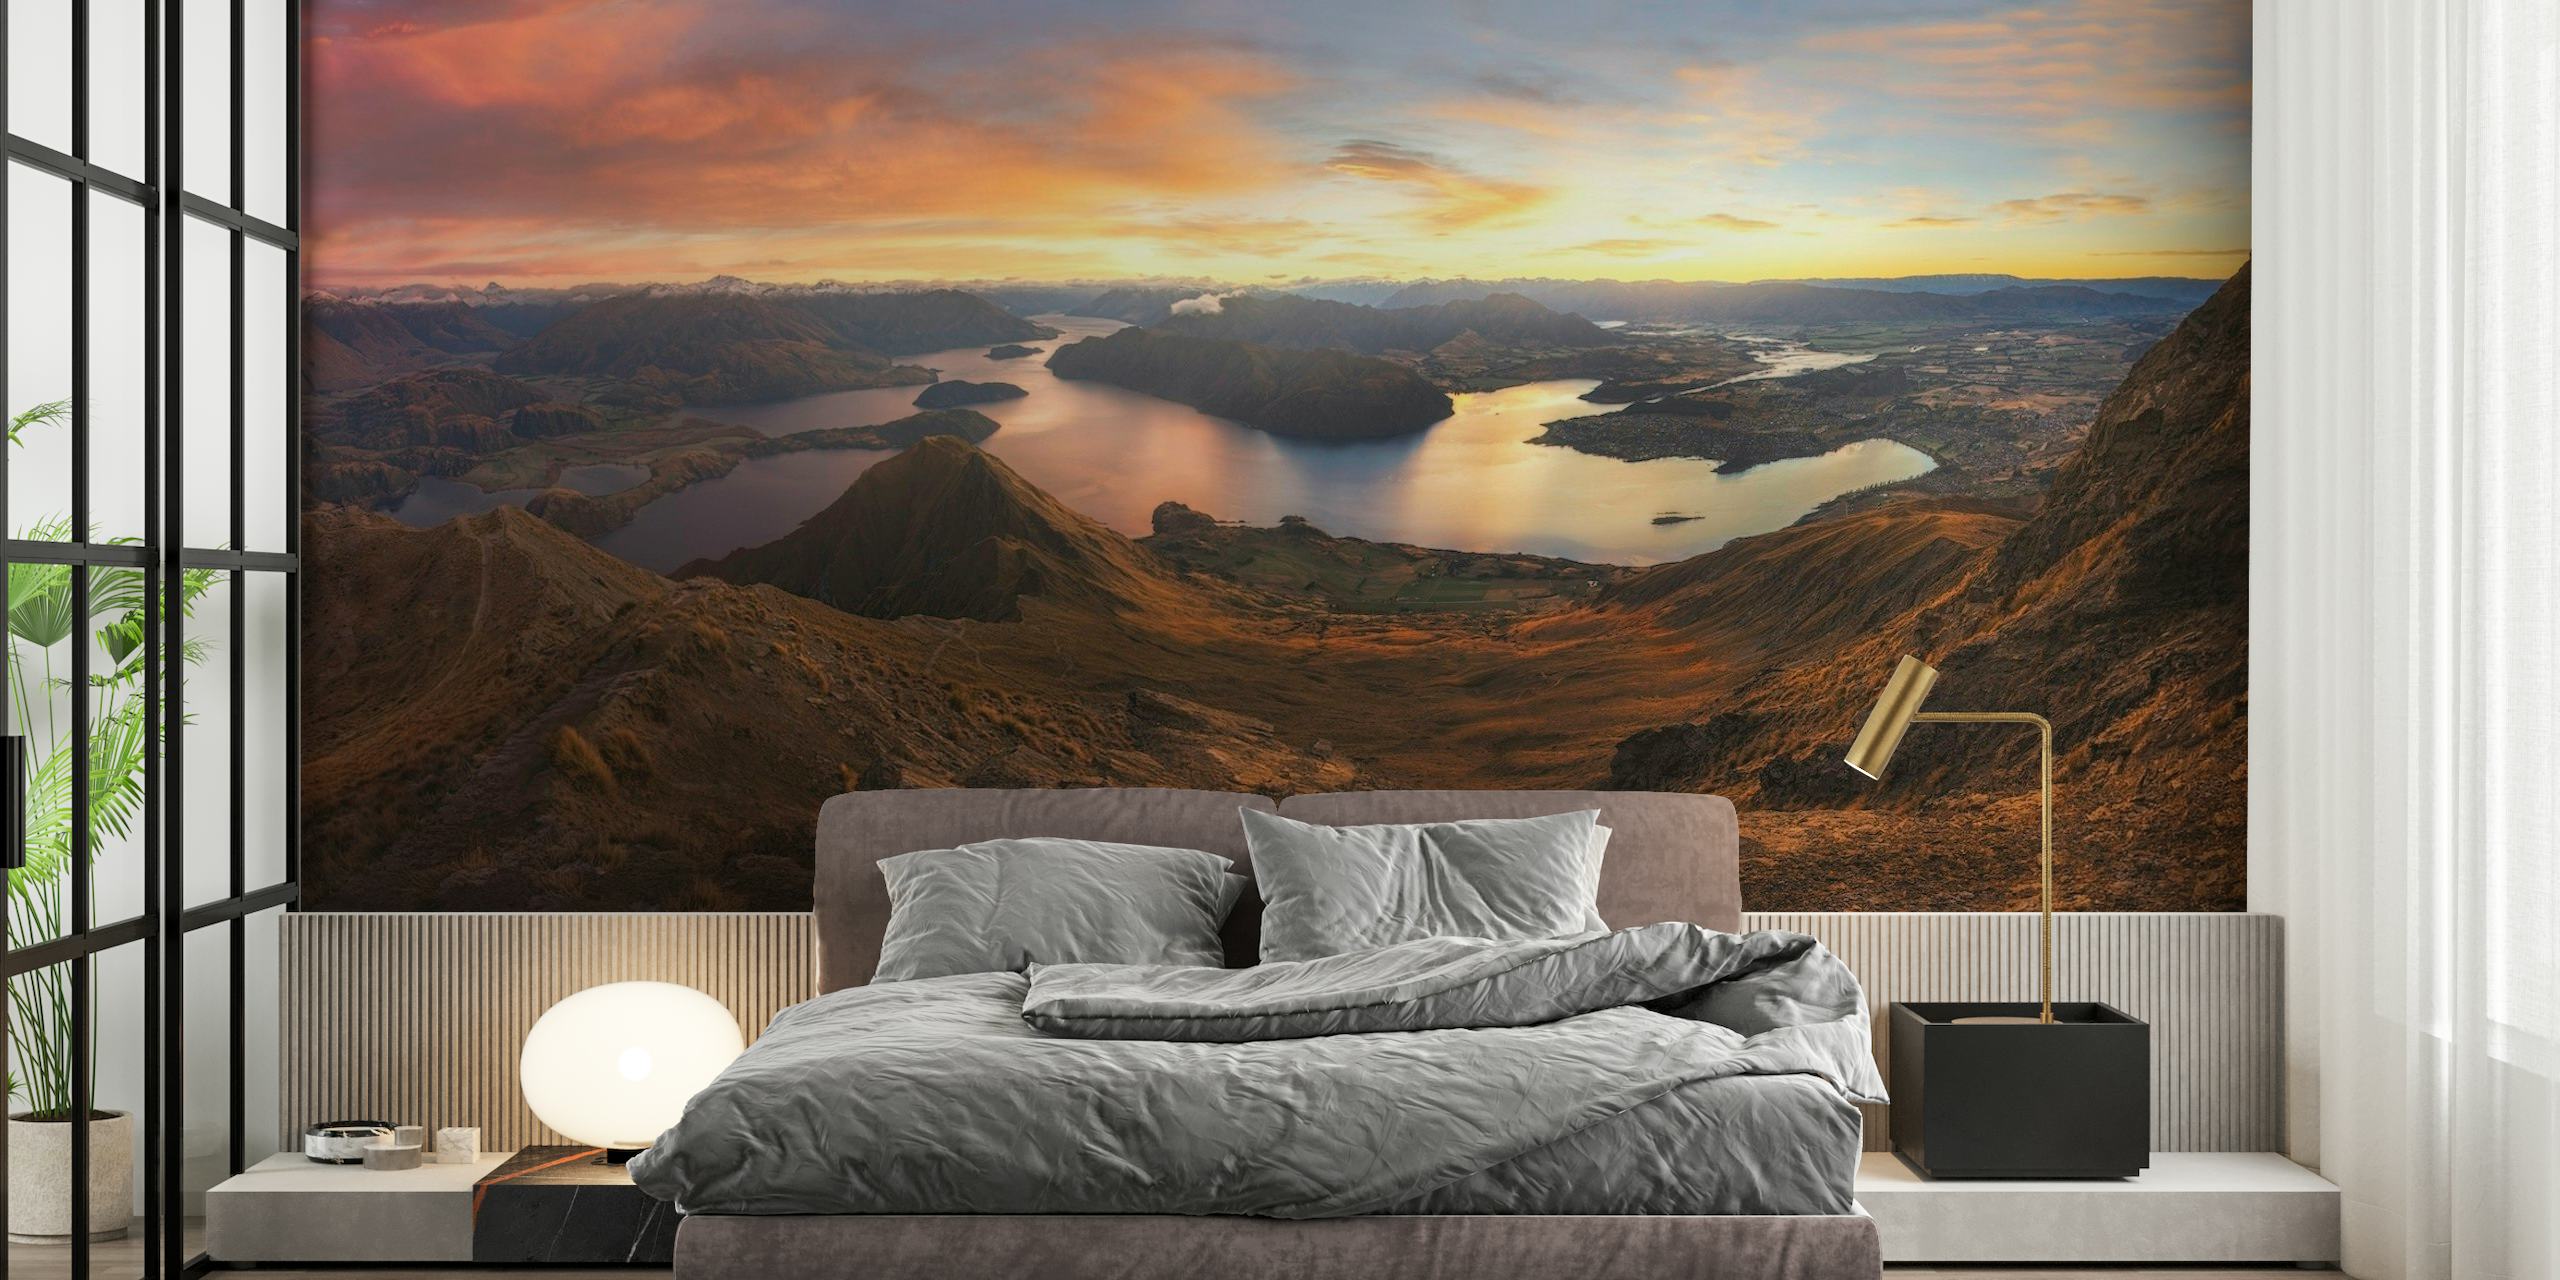 Fototapeta Roys Peak Panorama View przedstawiająca wschód słońca nad spokojnym jeziorem i skalistymi górami.